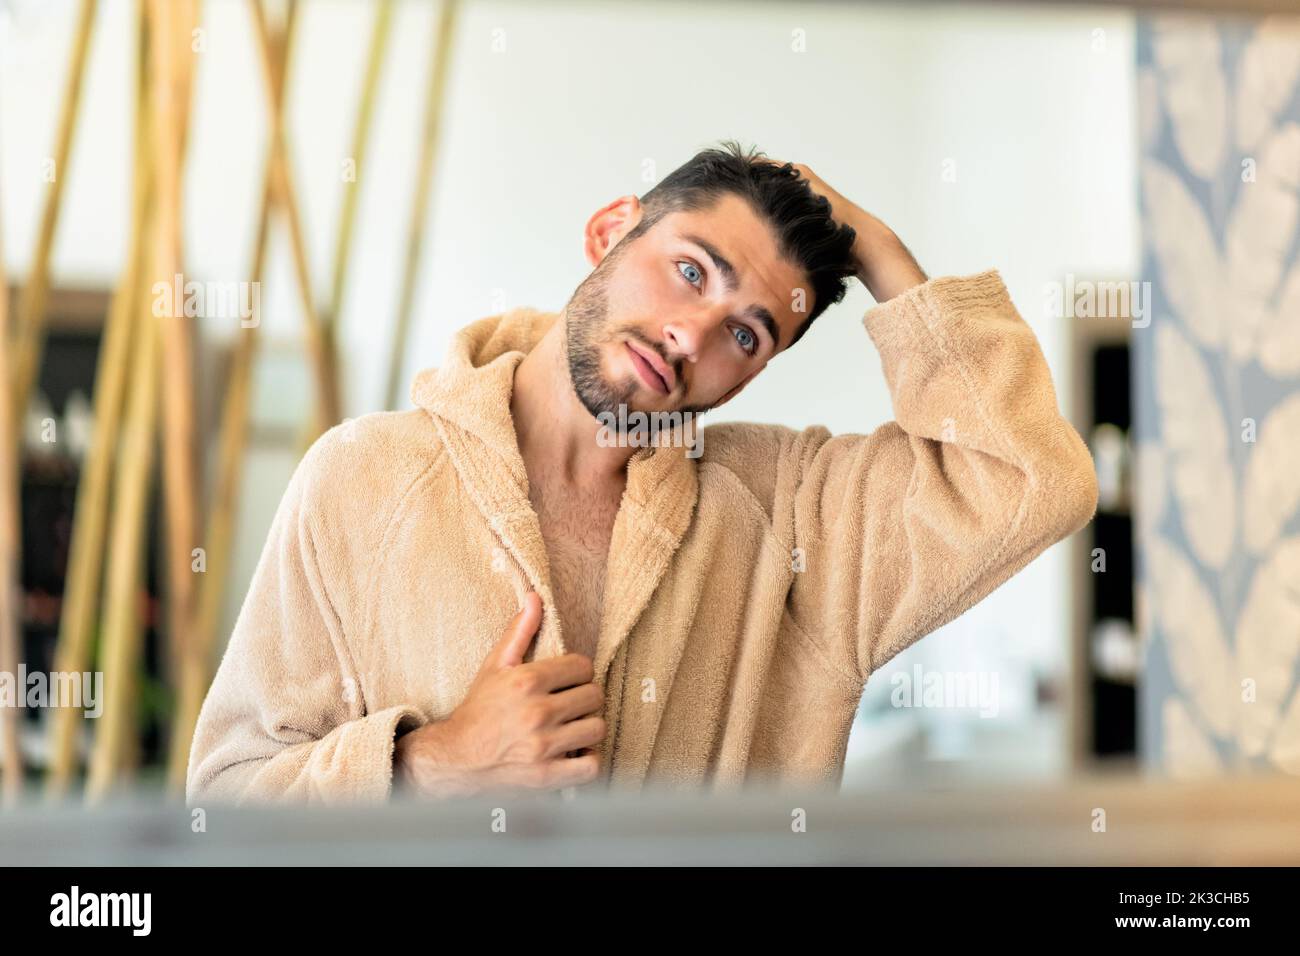 Spiegelung eines jungen Mannes im weichen Bademantel, der während der Spa-Sitzung im Salon dunkle Haare berührt und in den Spiegel schaut Stockfoto